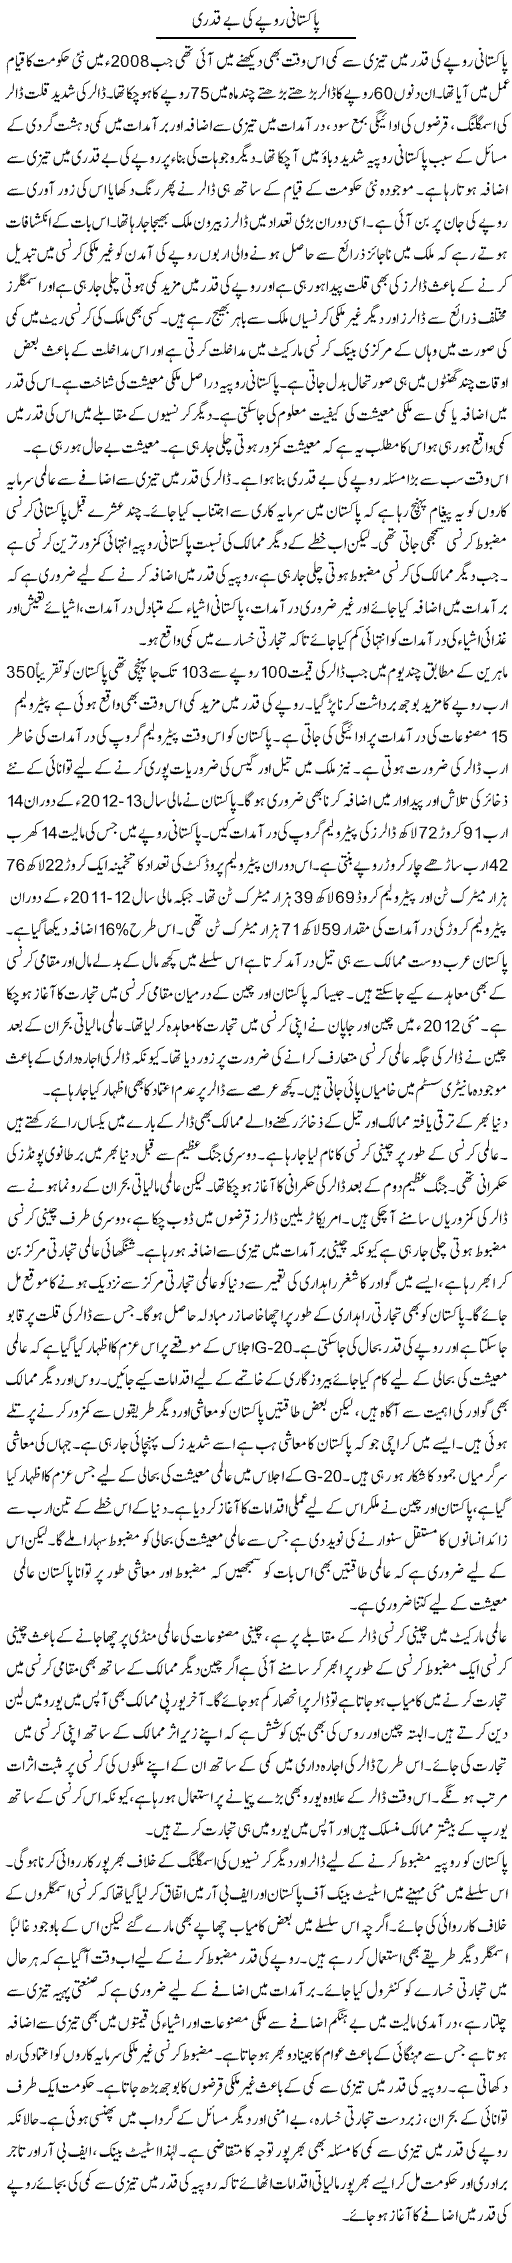 Pakistani Rupy Ki Be Qadri 2 | M.I Khalil | Daily Urdu Columns